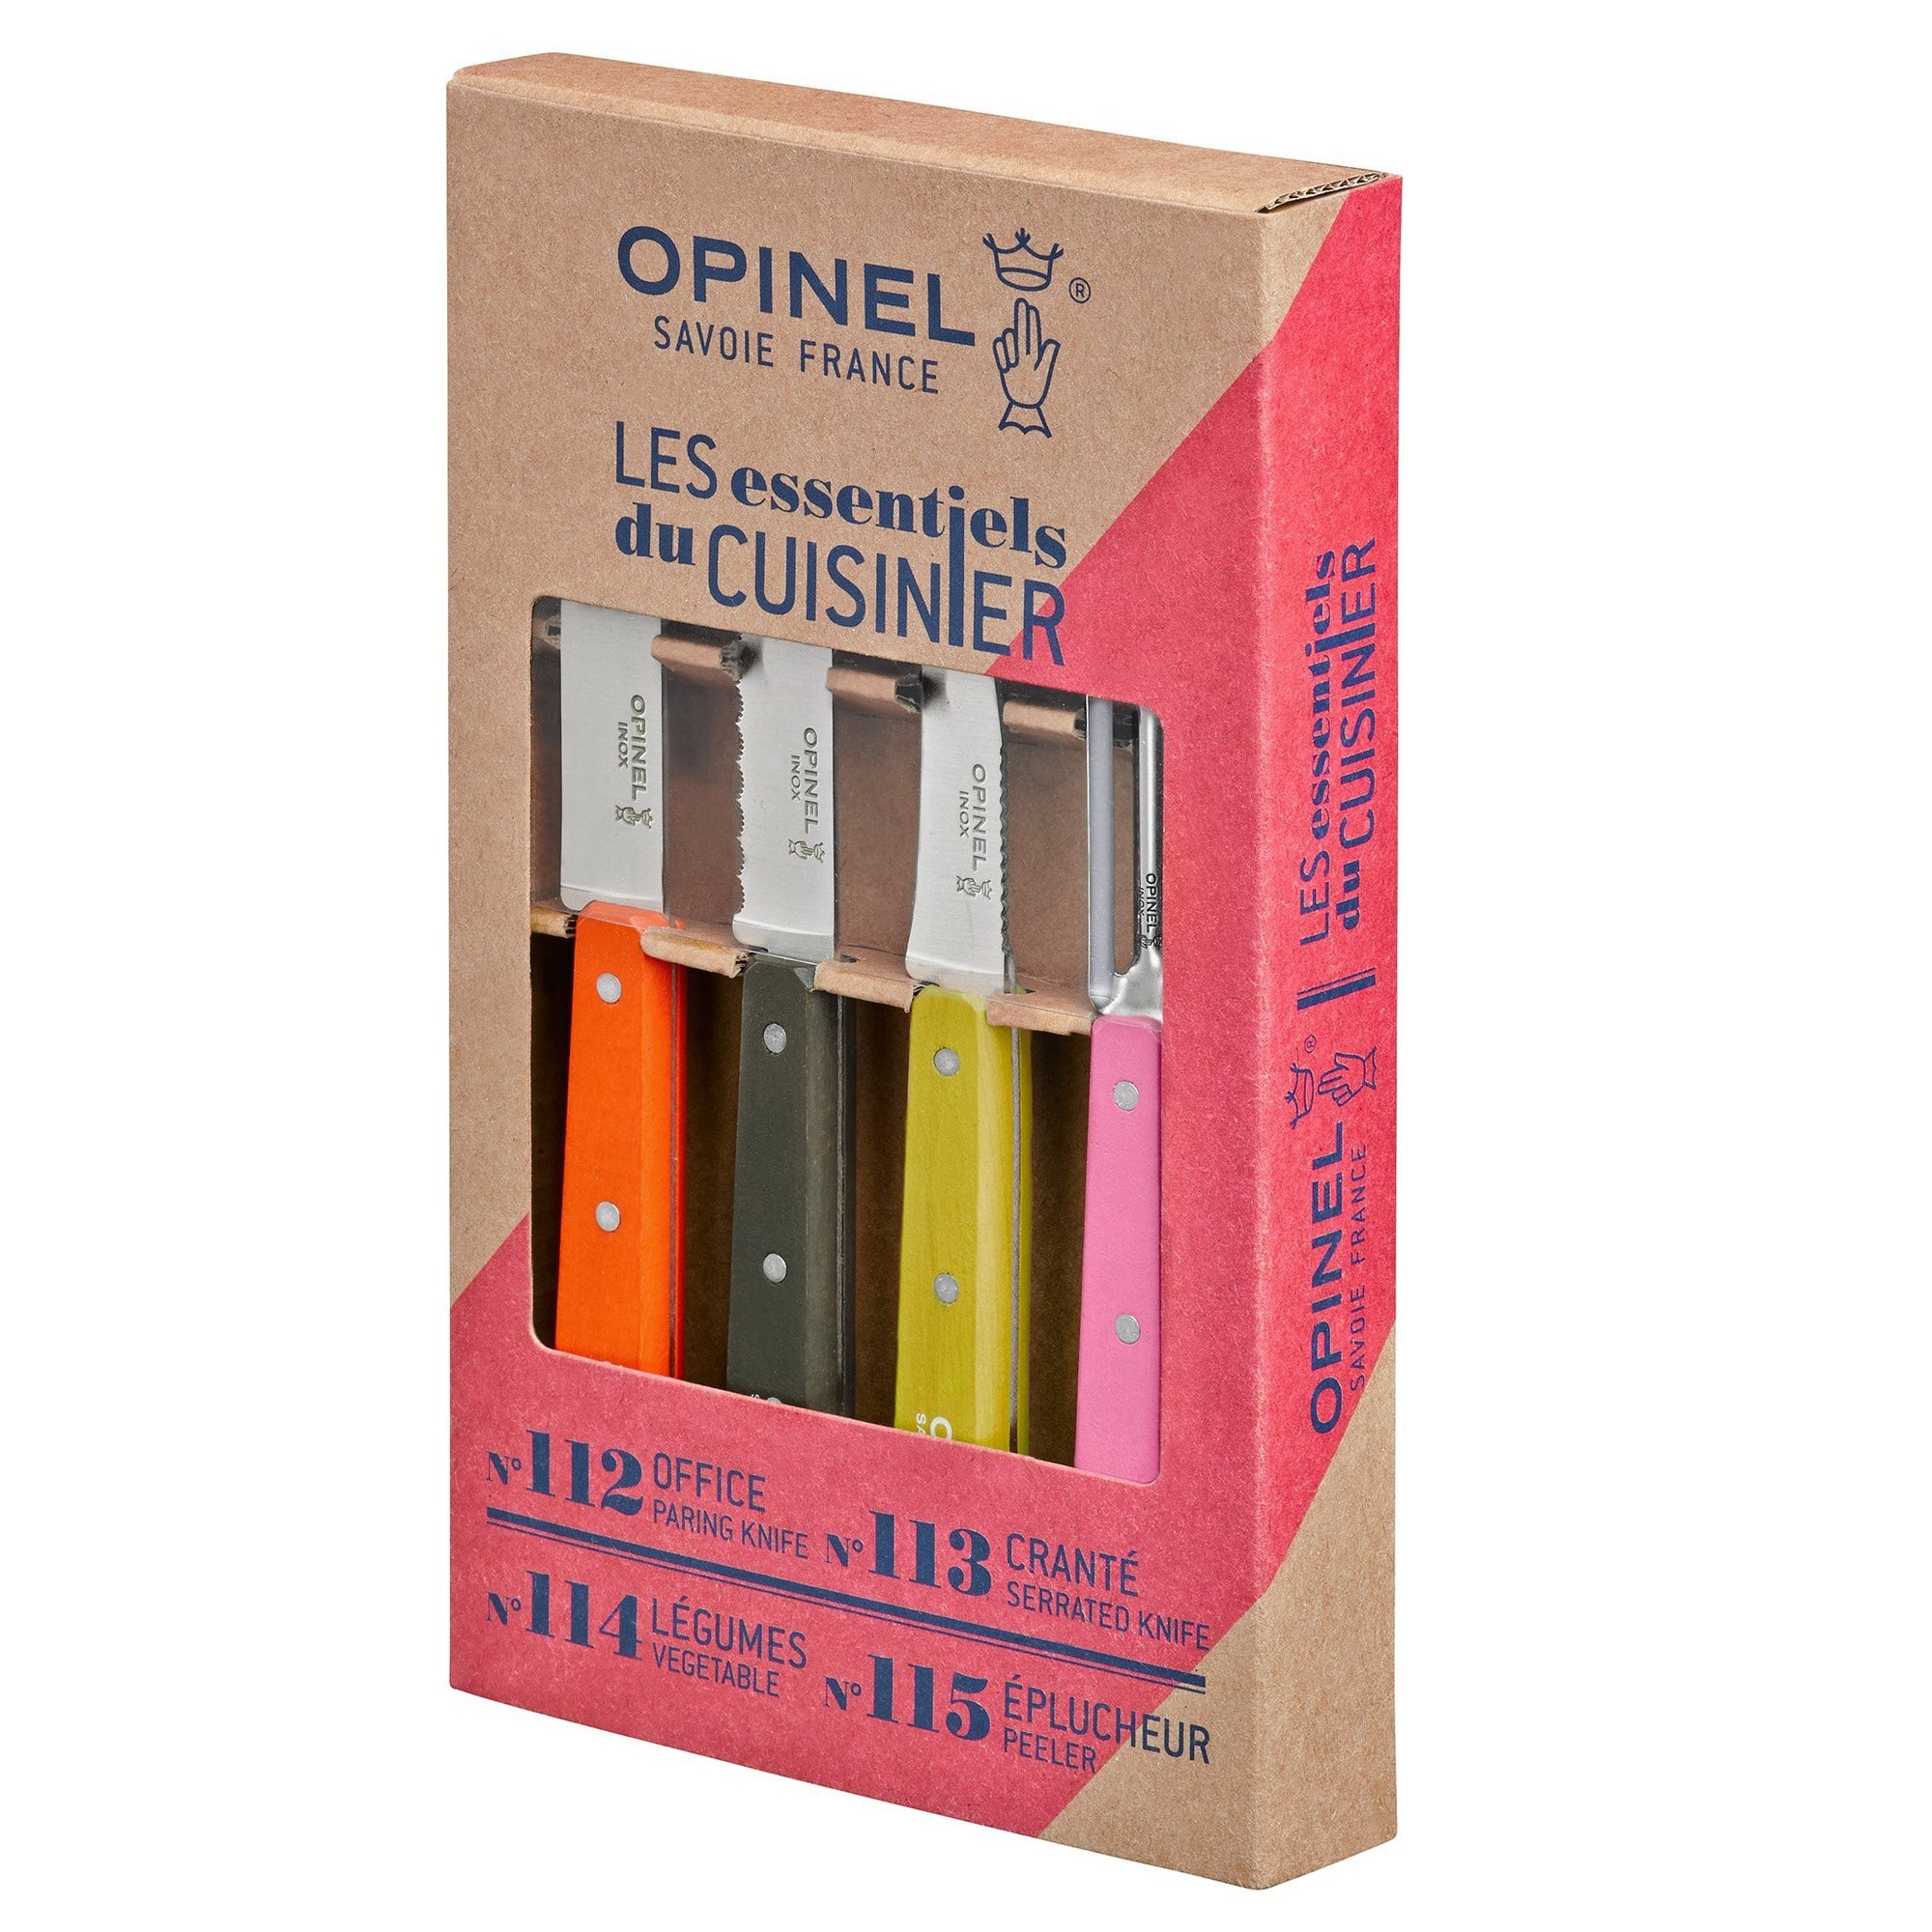 Opinel "Les Essentiels" Kitchen Set, 4 pieces